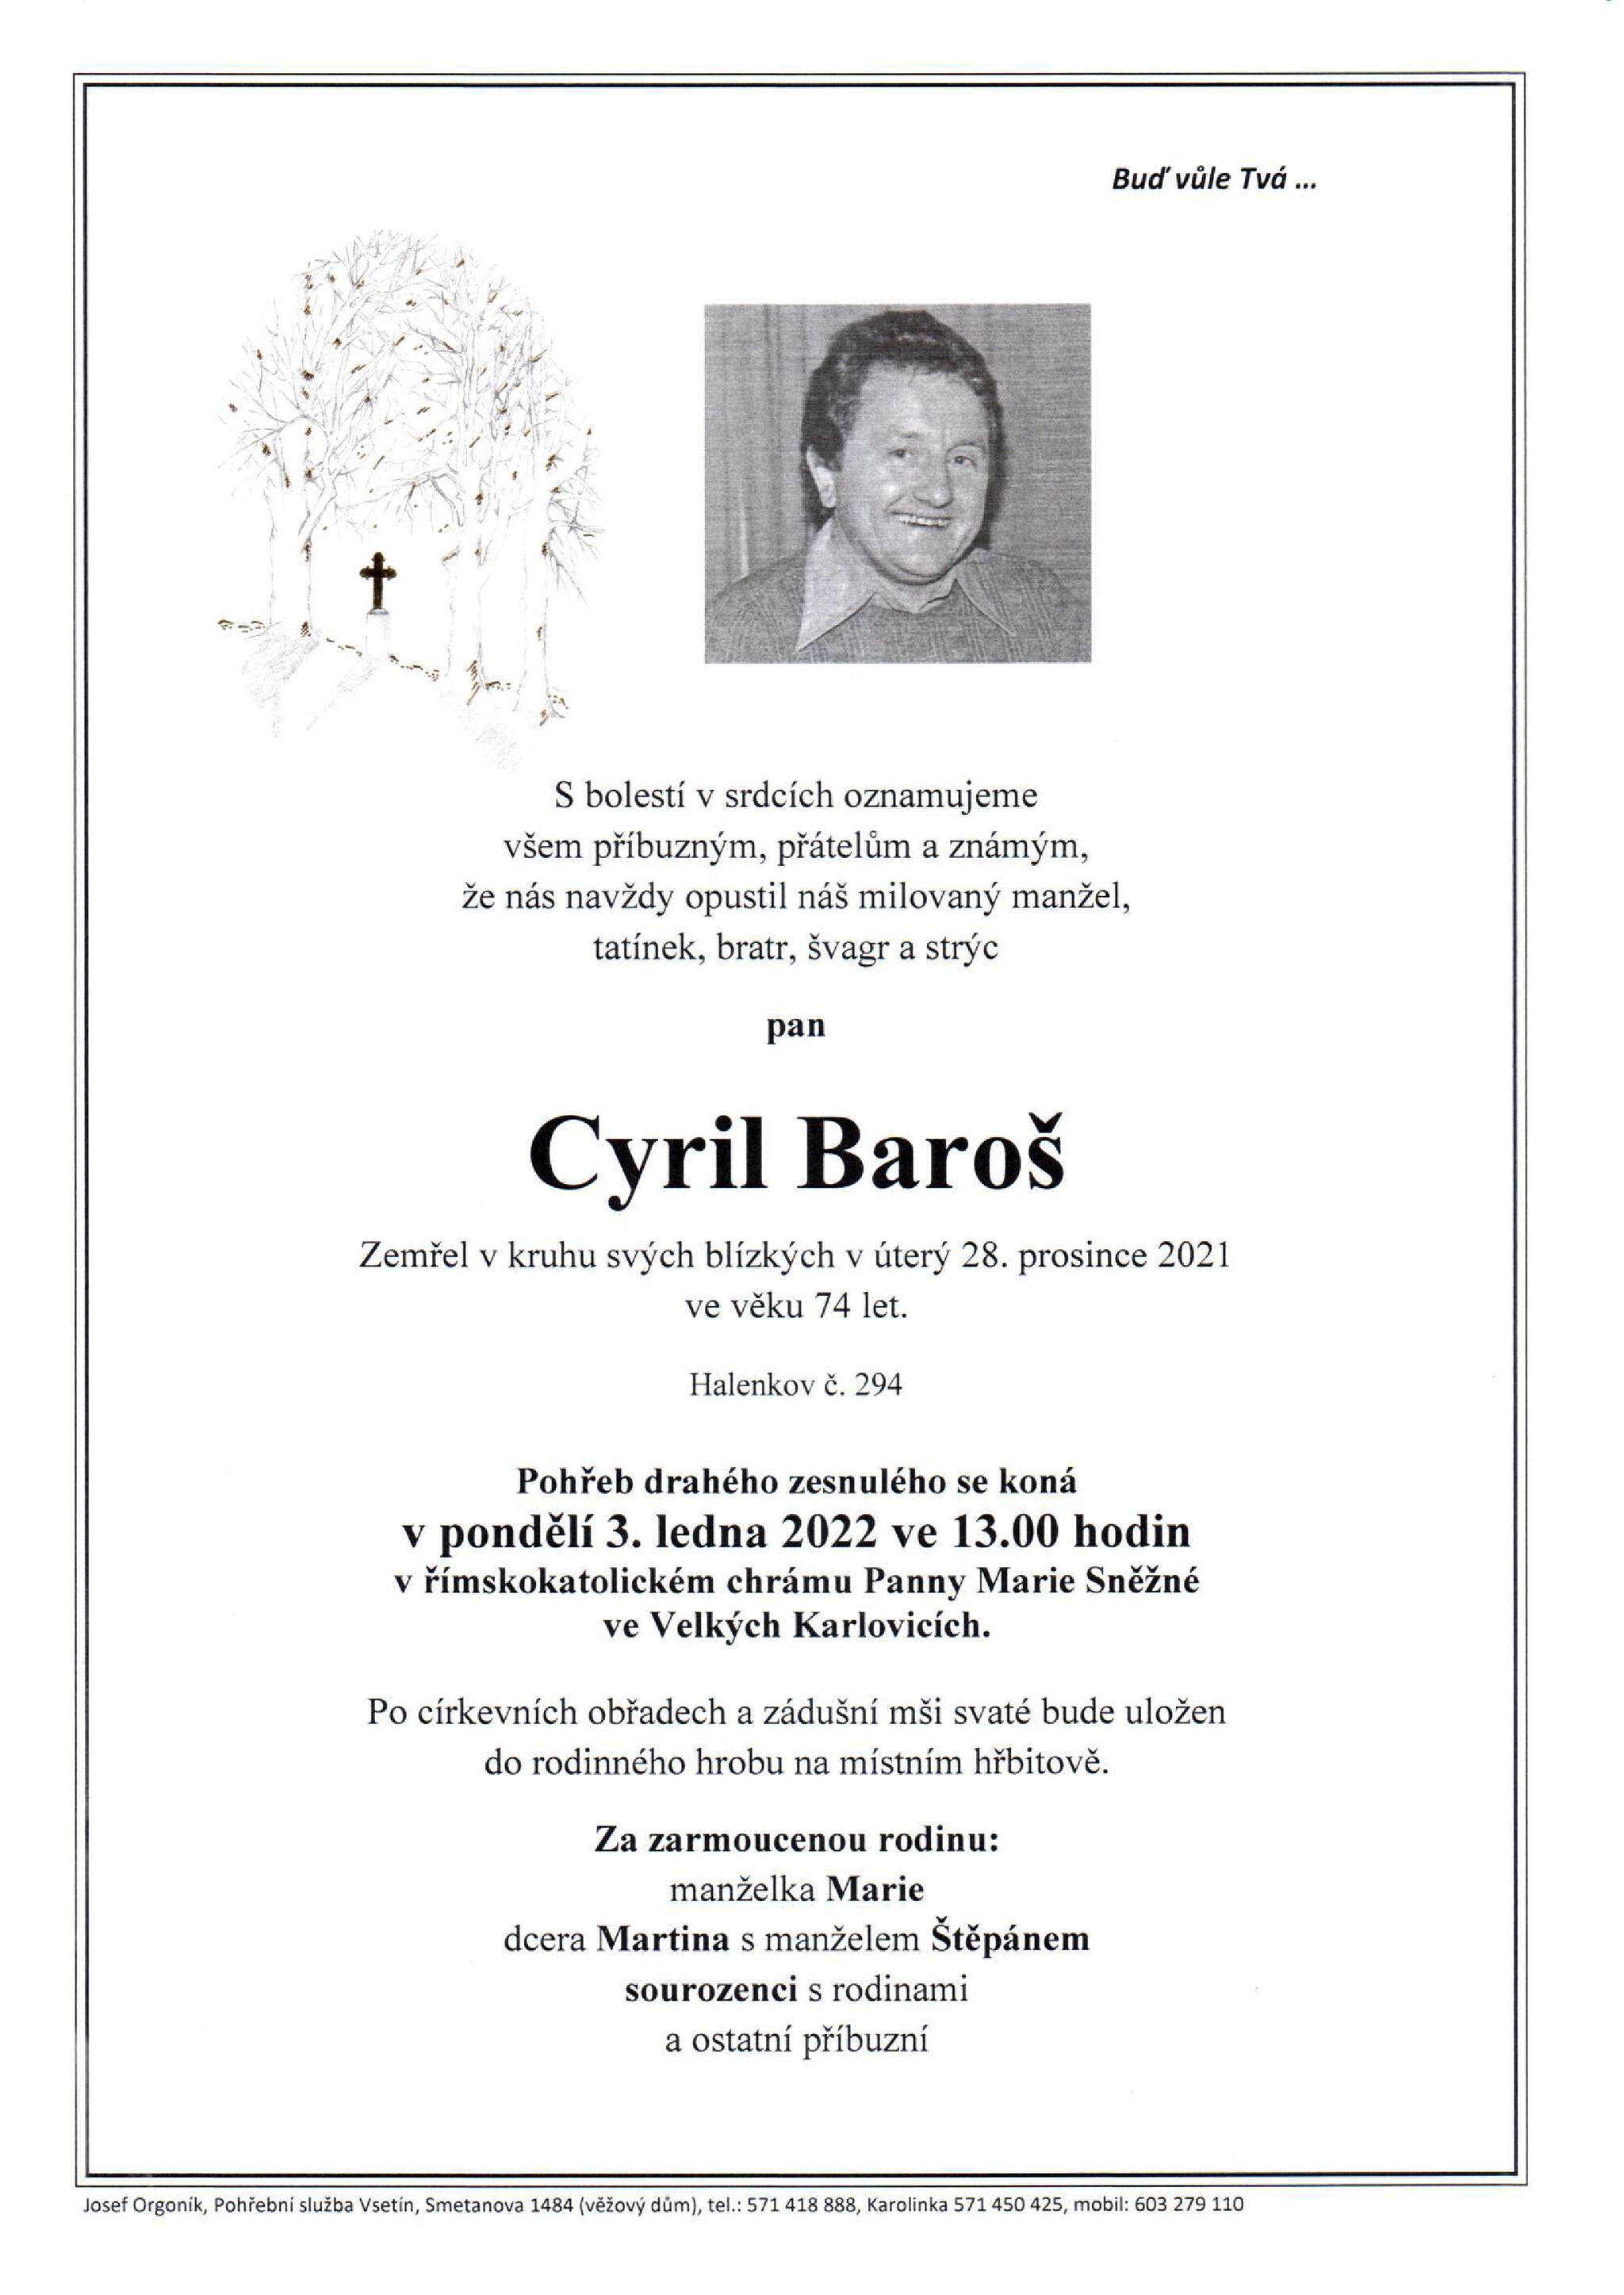 Cyril Baroš